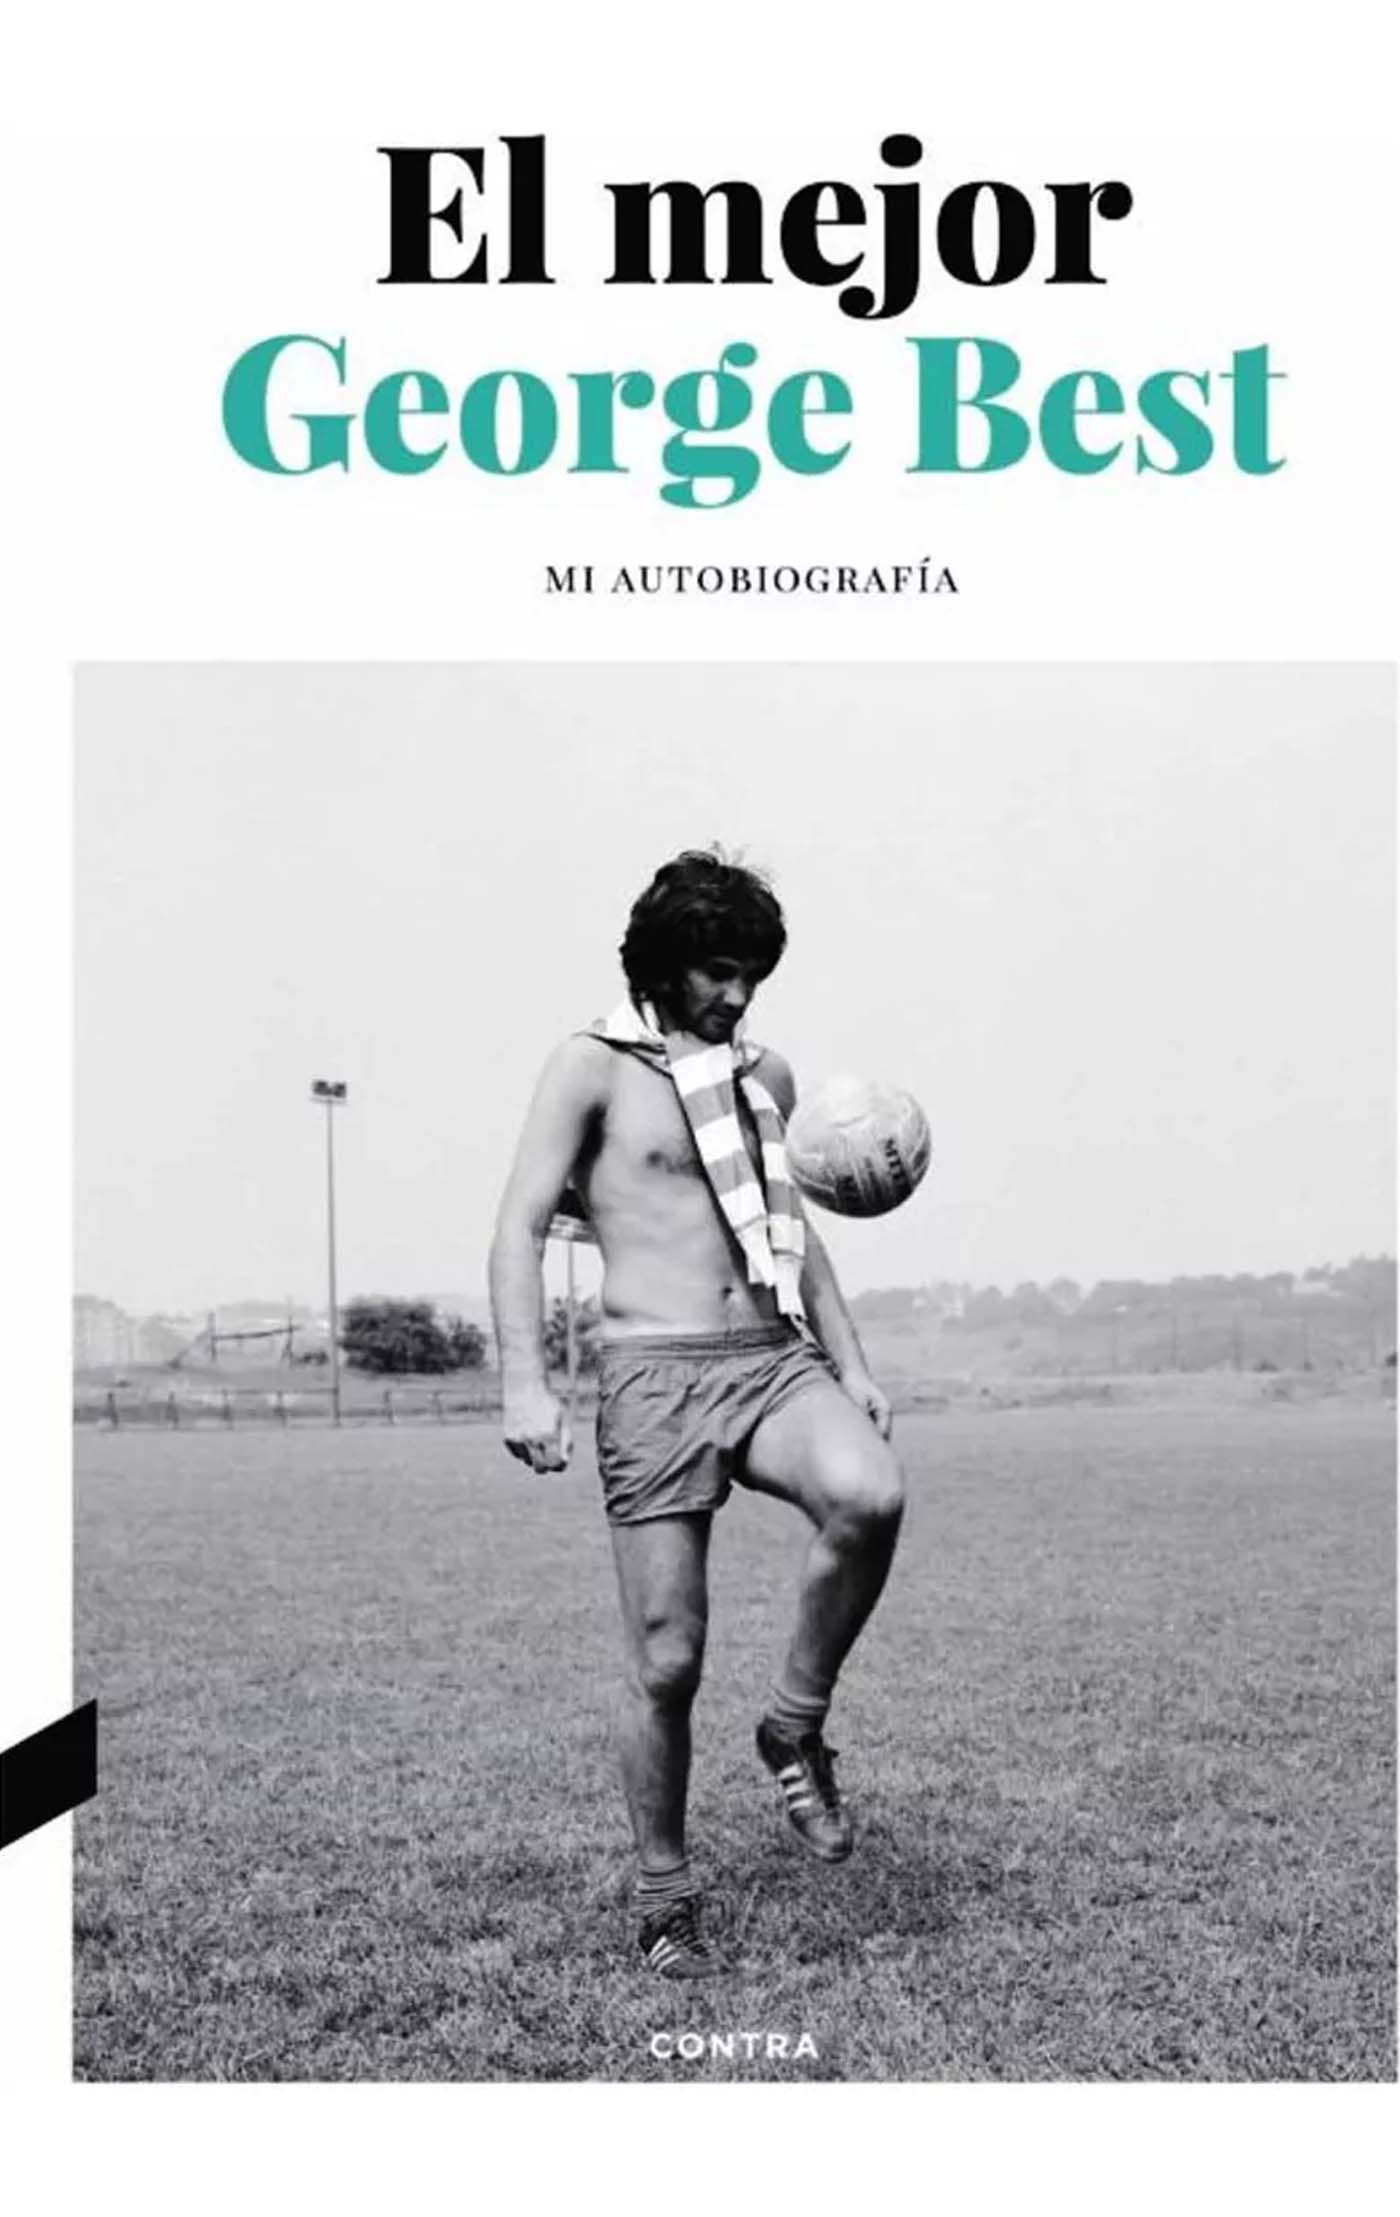 El mejor George Best